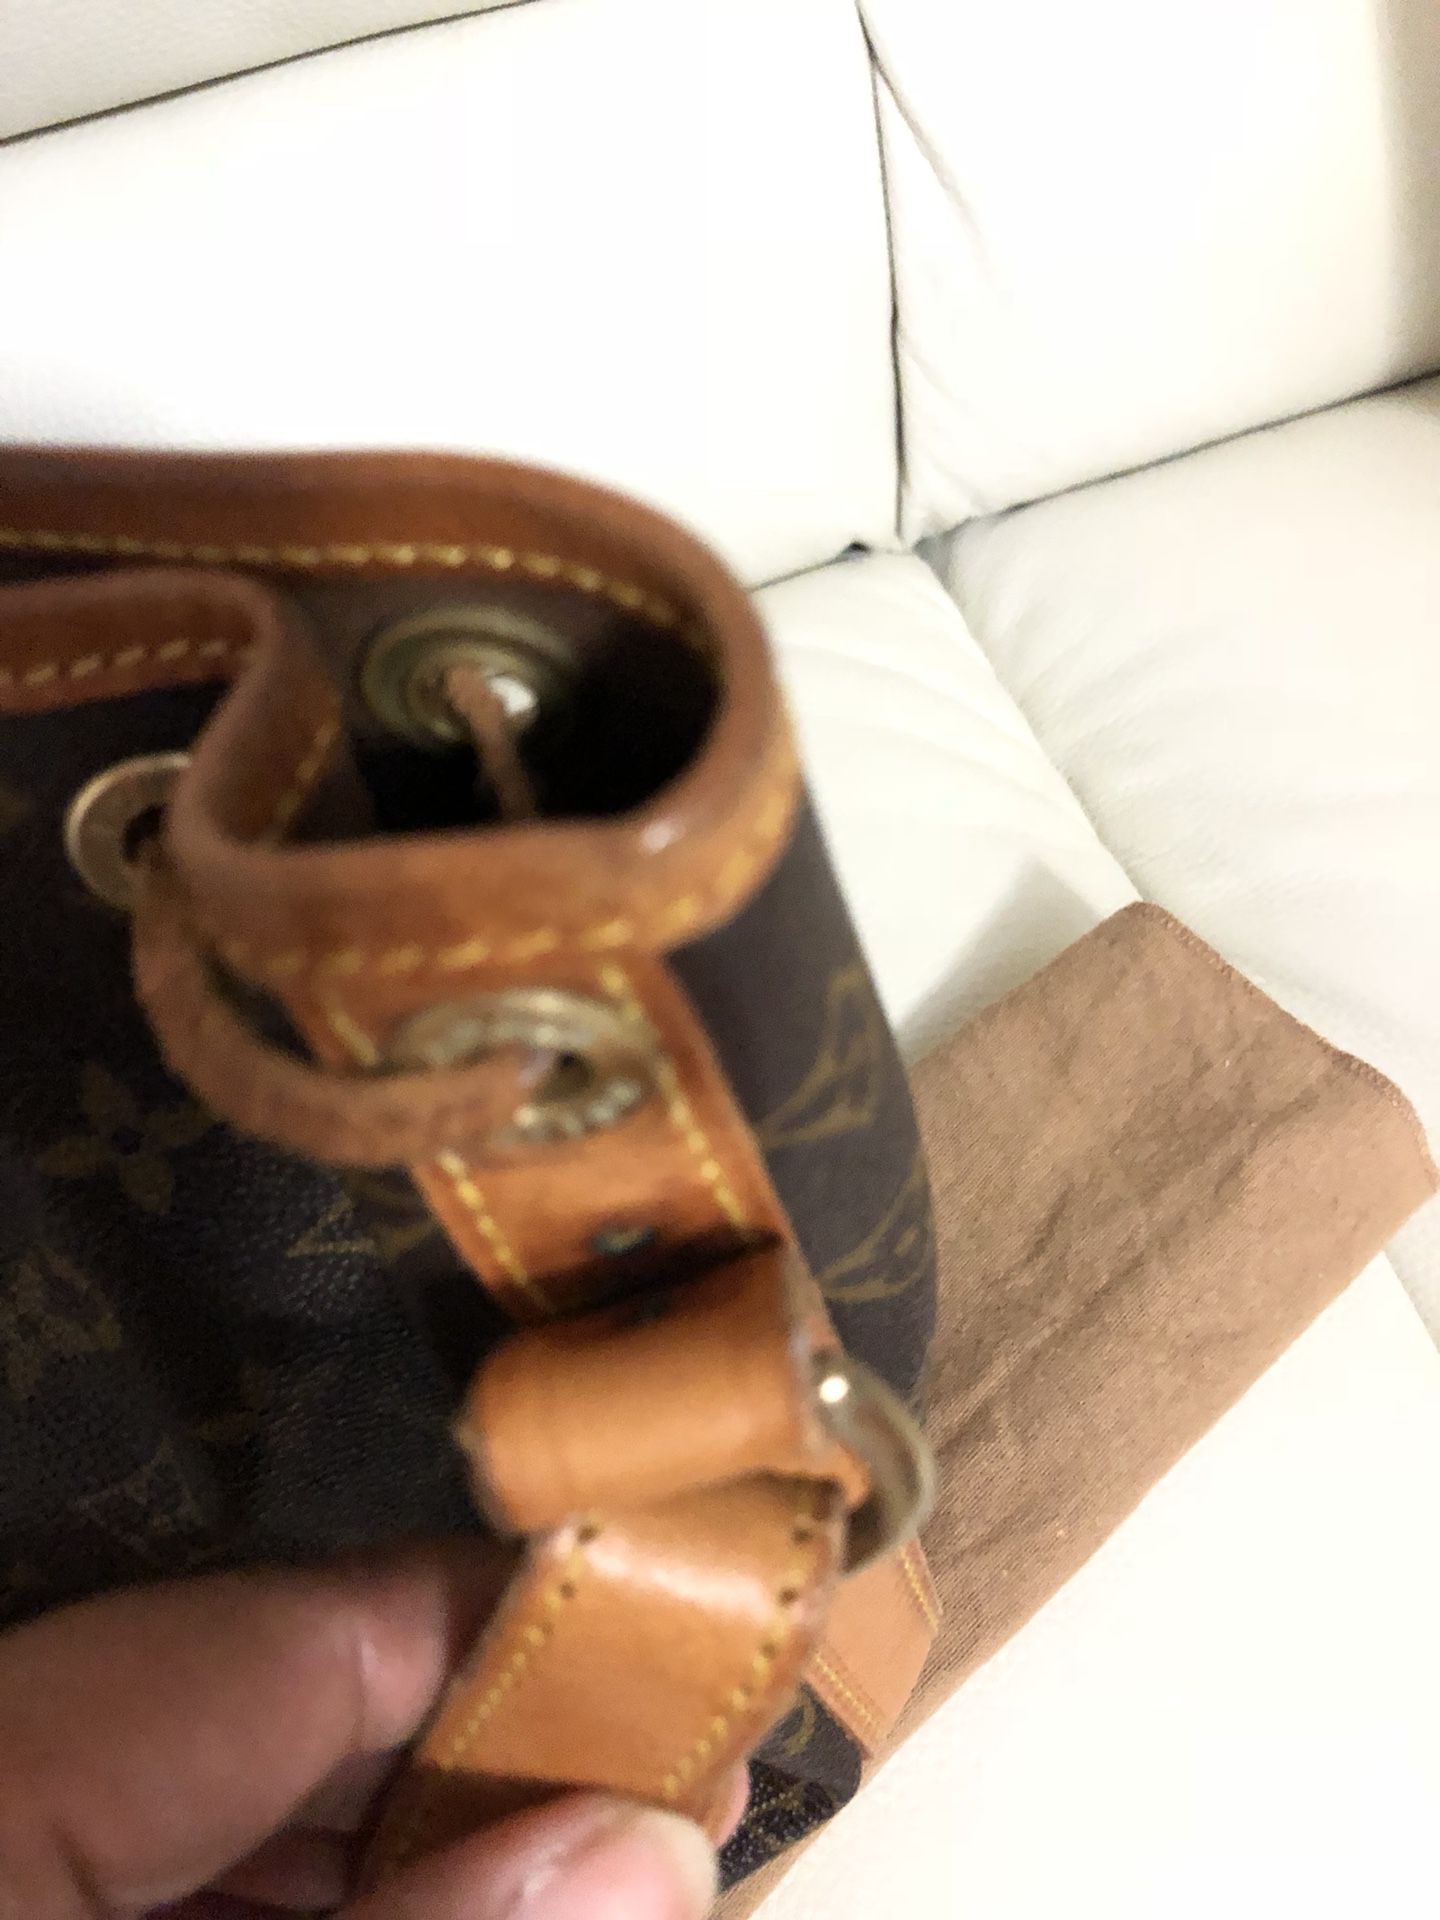 LV Geronimo shoulder bag for Sale in Kapolei, HI - OfferUp